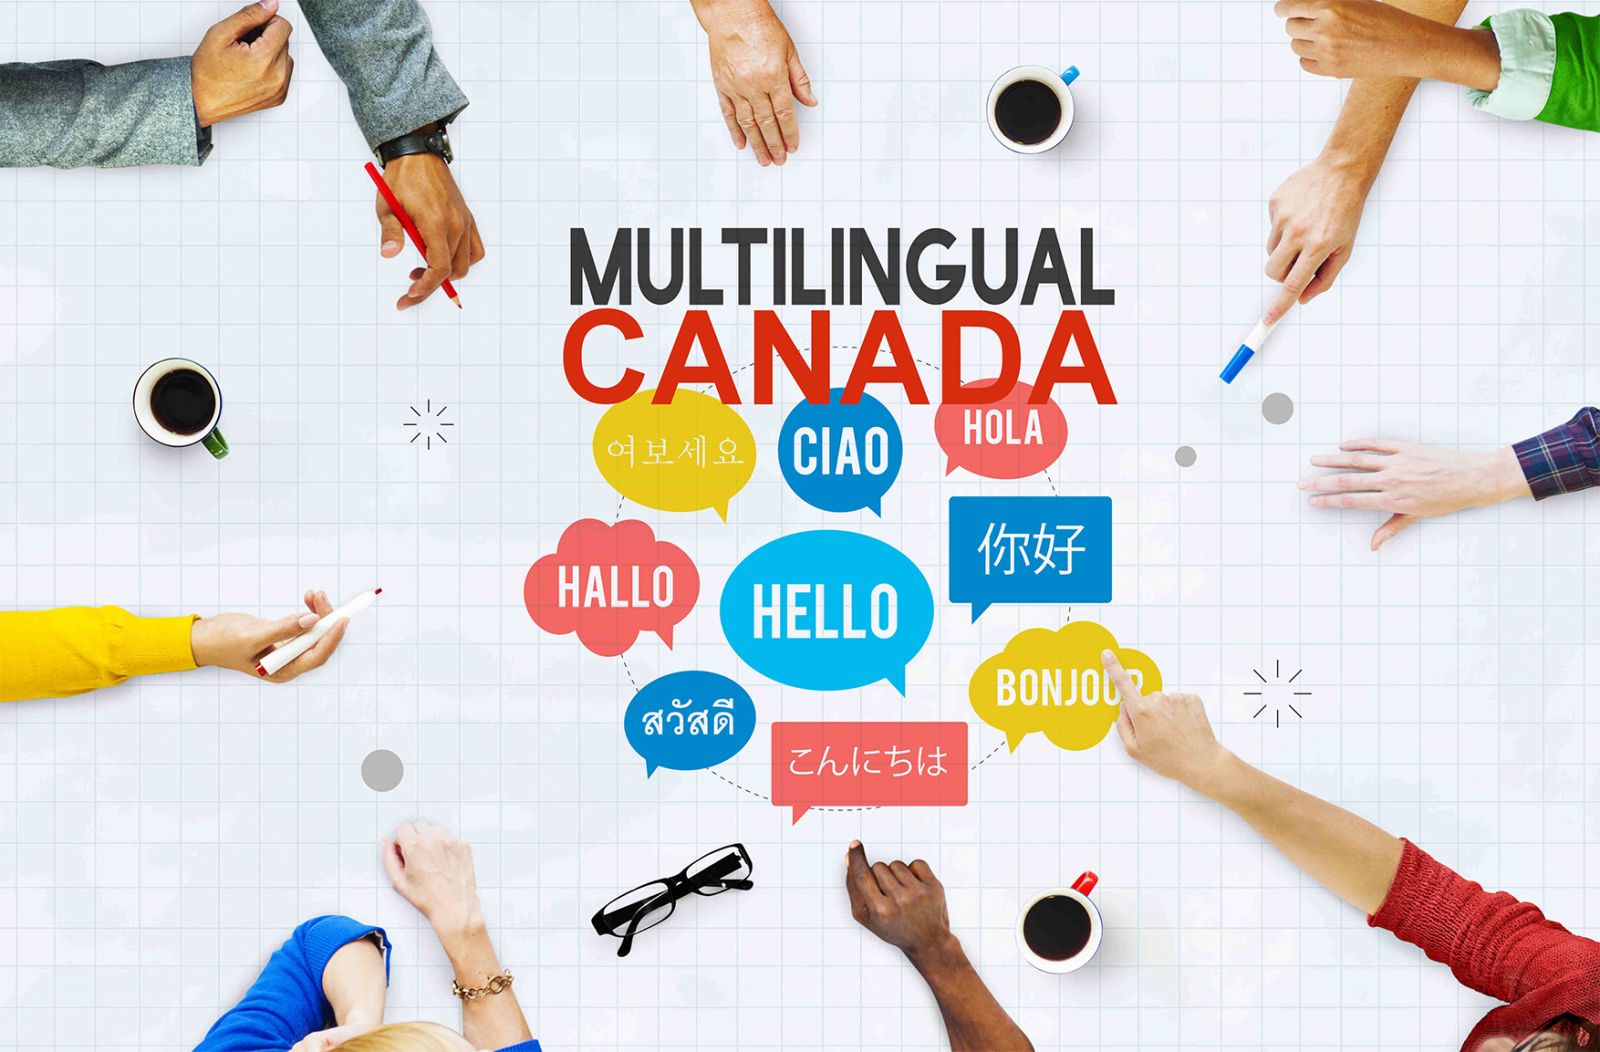 Lenguas chinas son los idiomas extranjero que más se hablan en Canadá